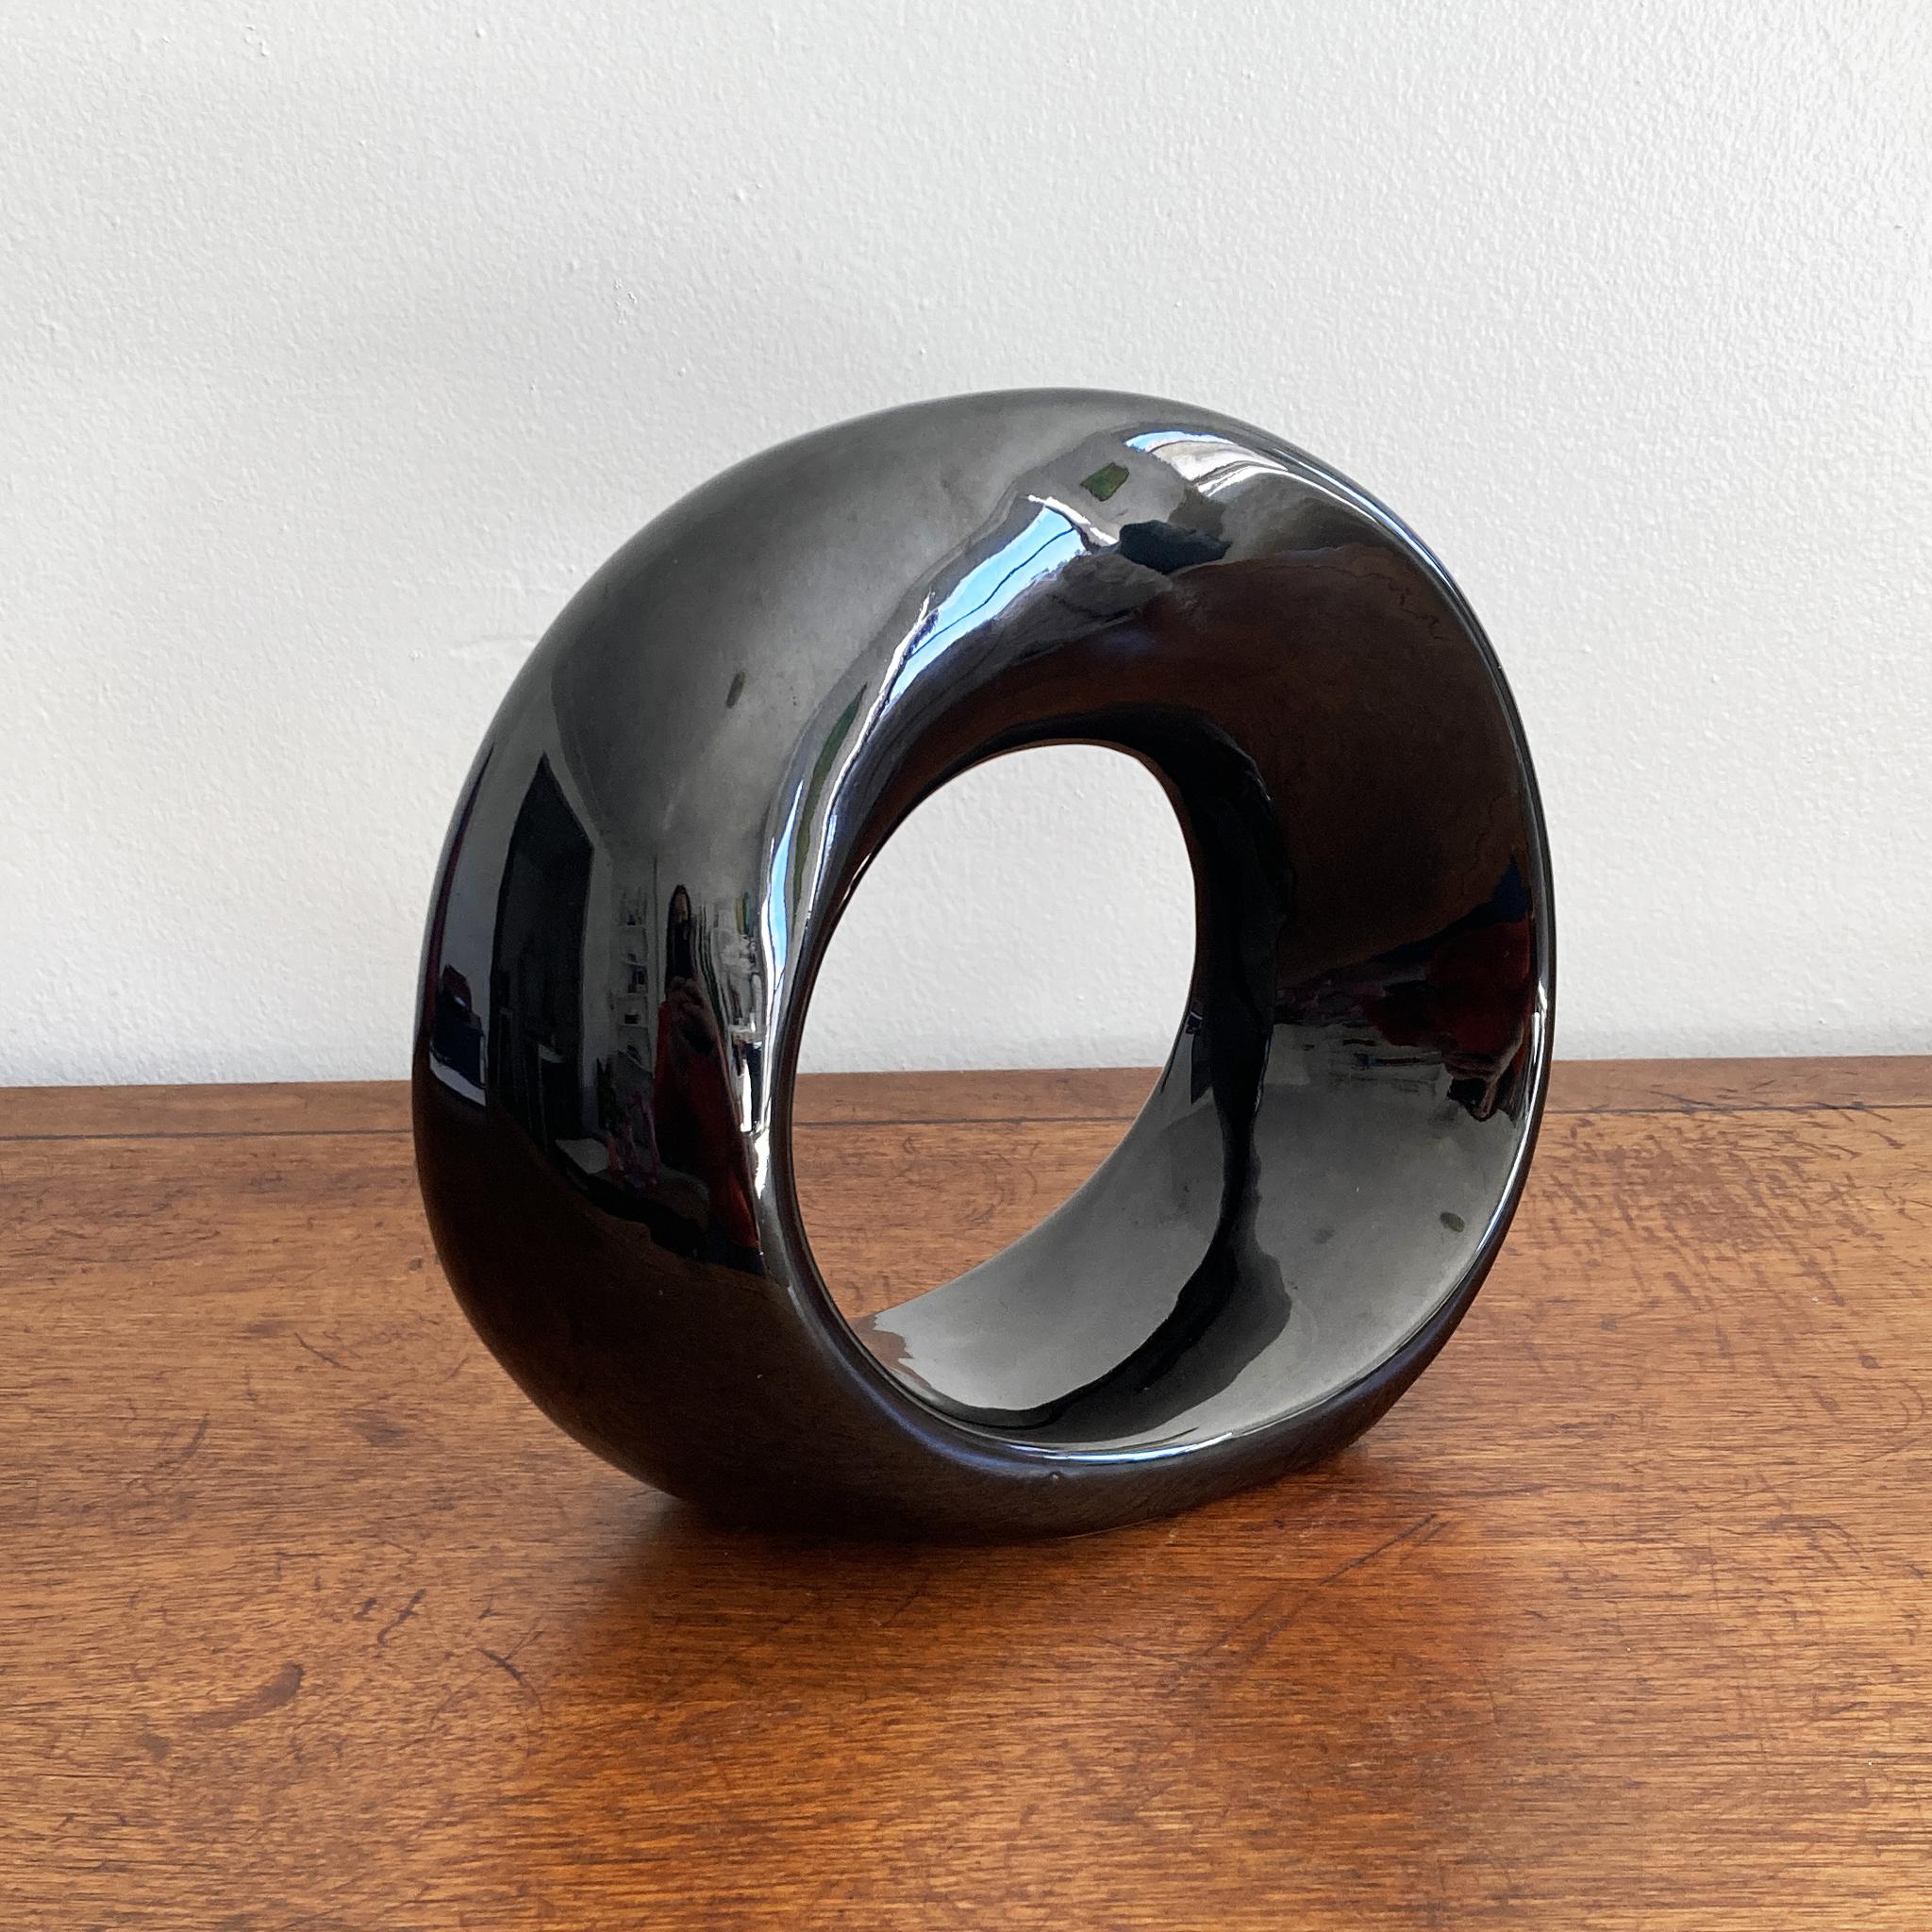 Une étonnante et rare sculpture abstraite d'Haeger en céramique noire brillante et torsadée. Cette pièce sollicite l'intérêt sous tous les angles, la silhouette d'orbe torsadée capte magnifiquement la lumière. Merveilleux seul, ou associé à des